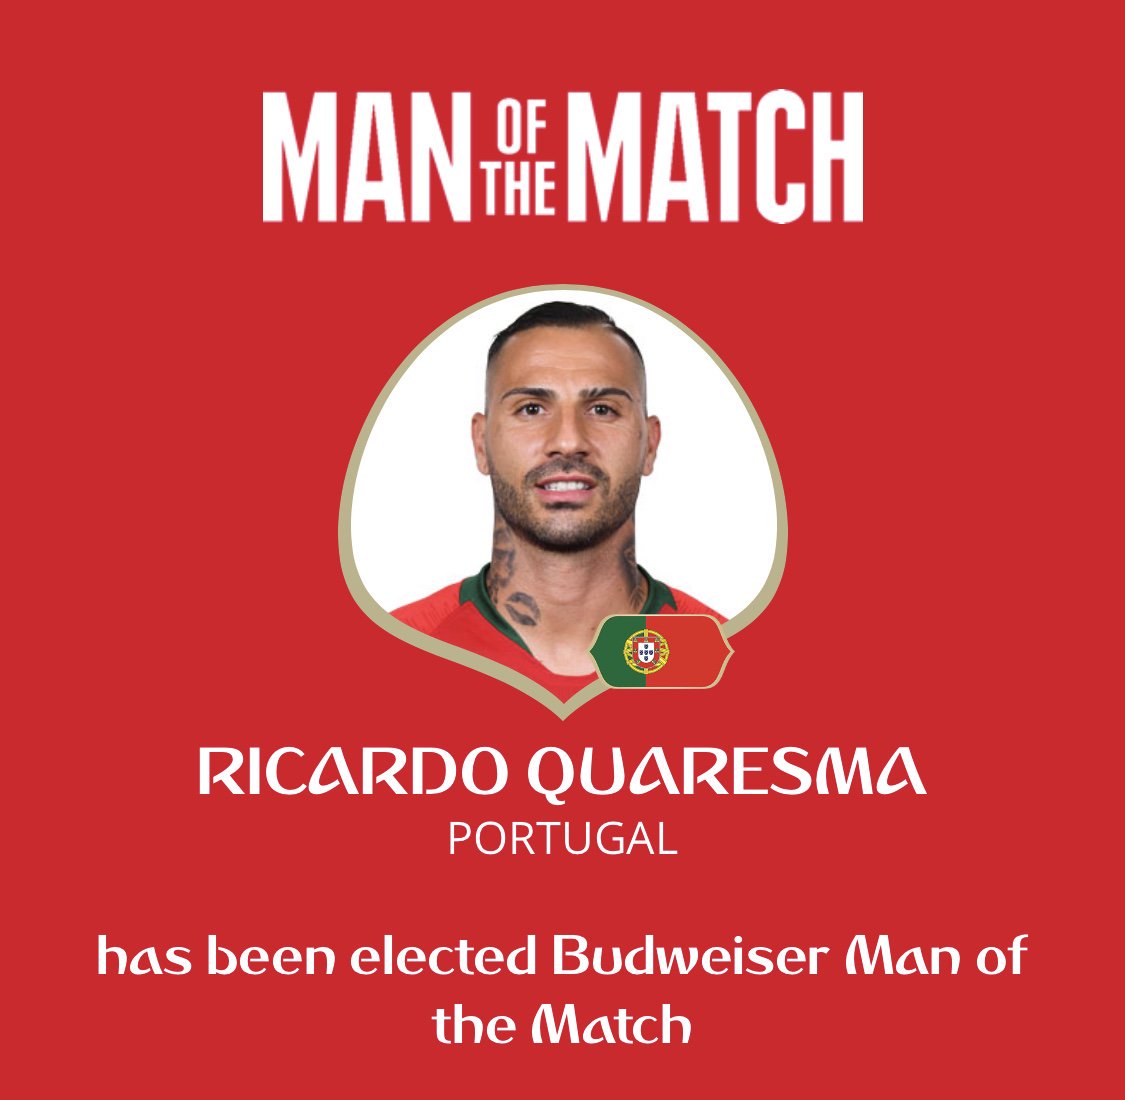 كواريزما افضل لاعب فى مباراة البرتغال وايران